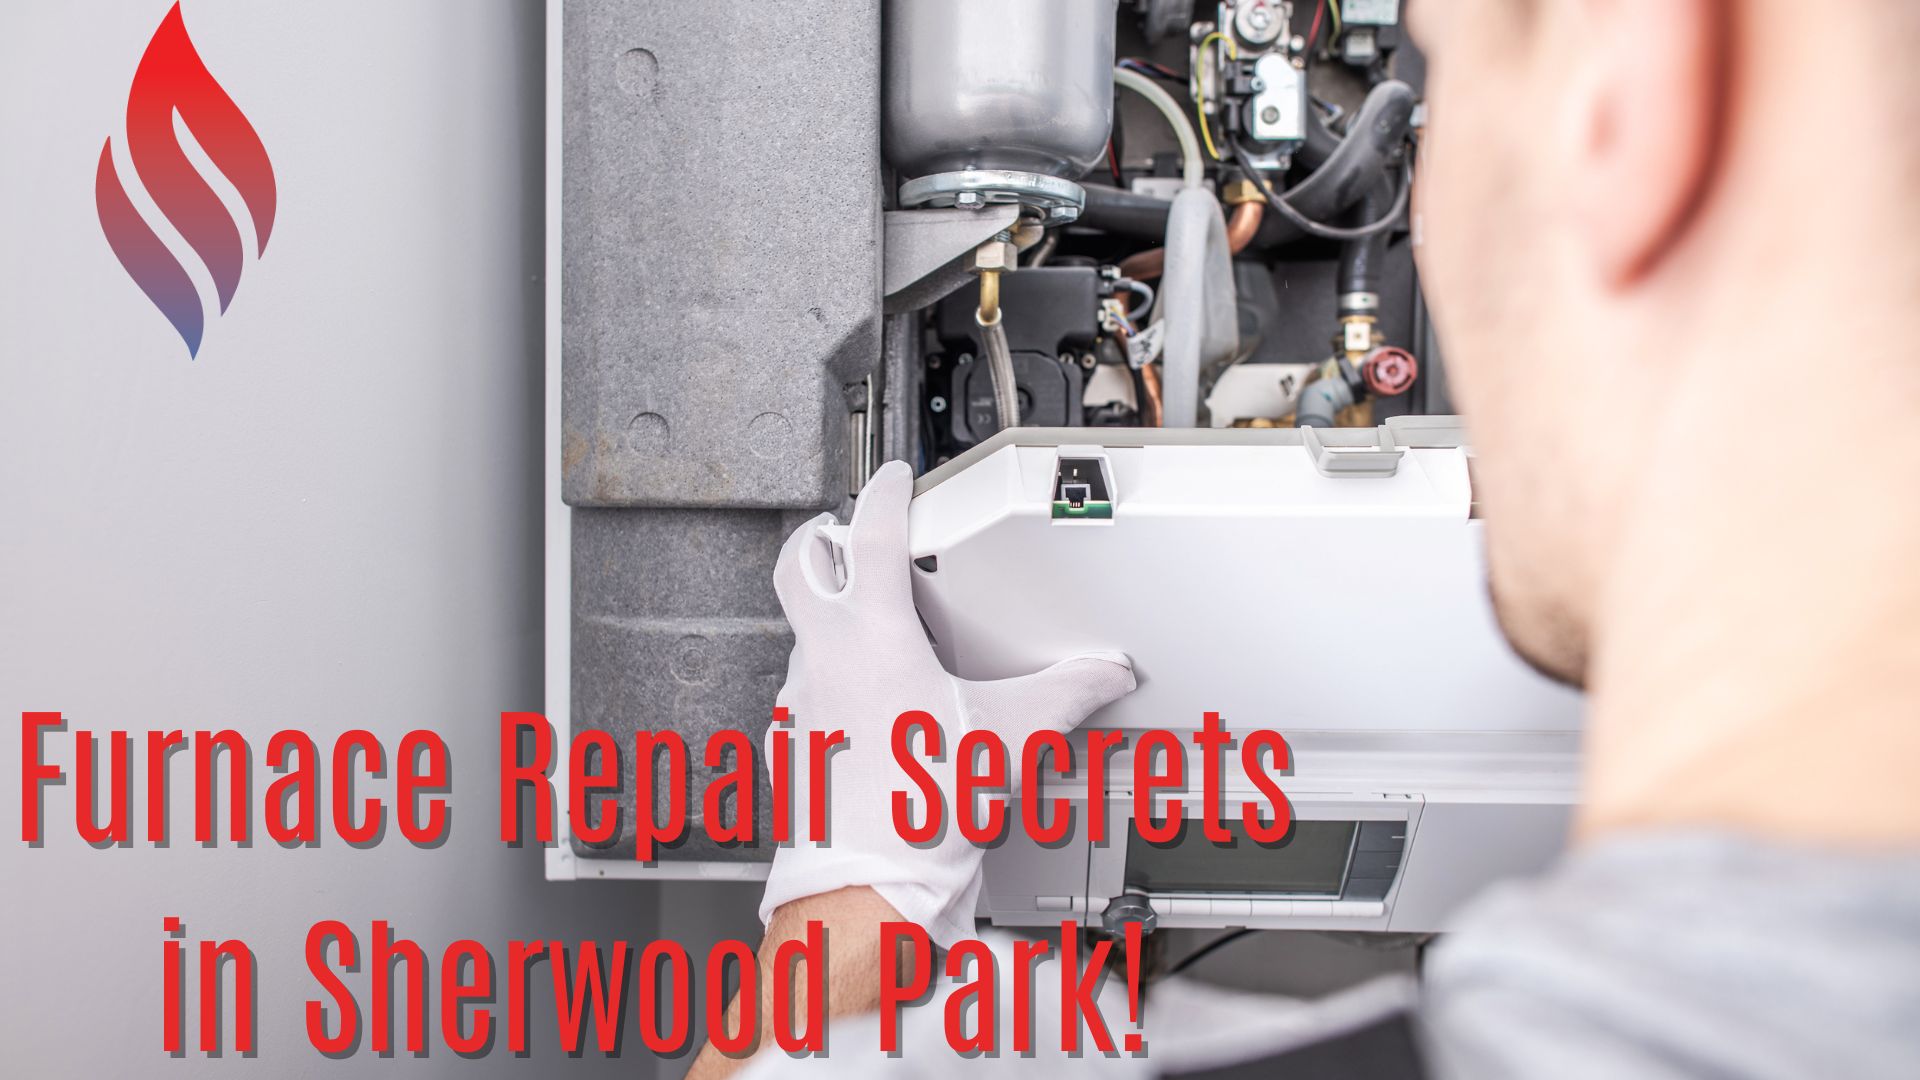 Furnace Repair Secrets in Sherwood Park!